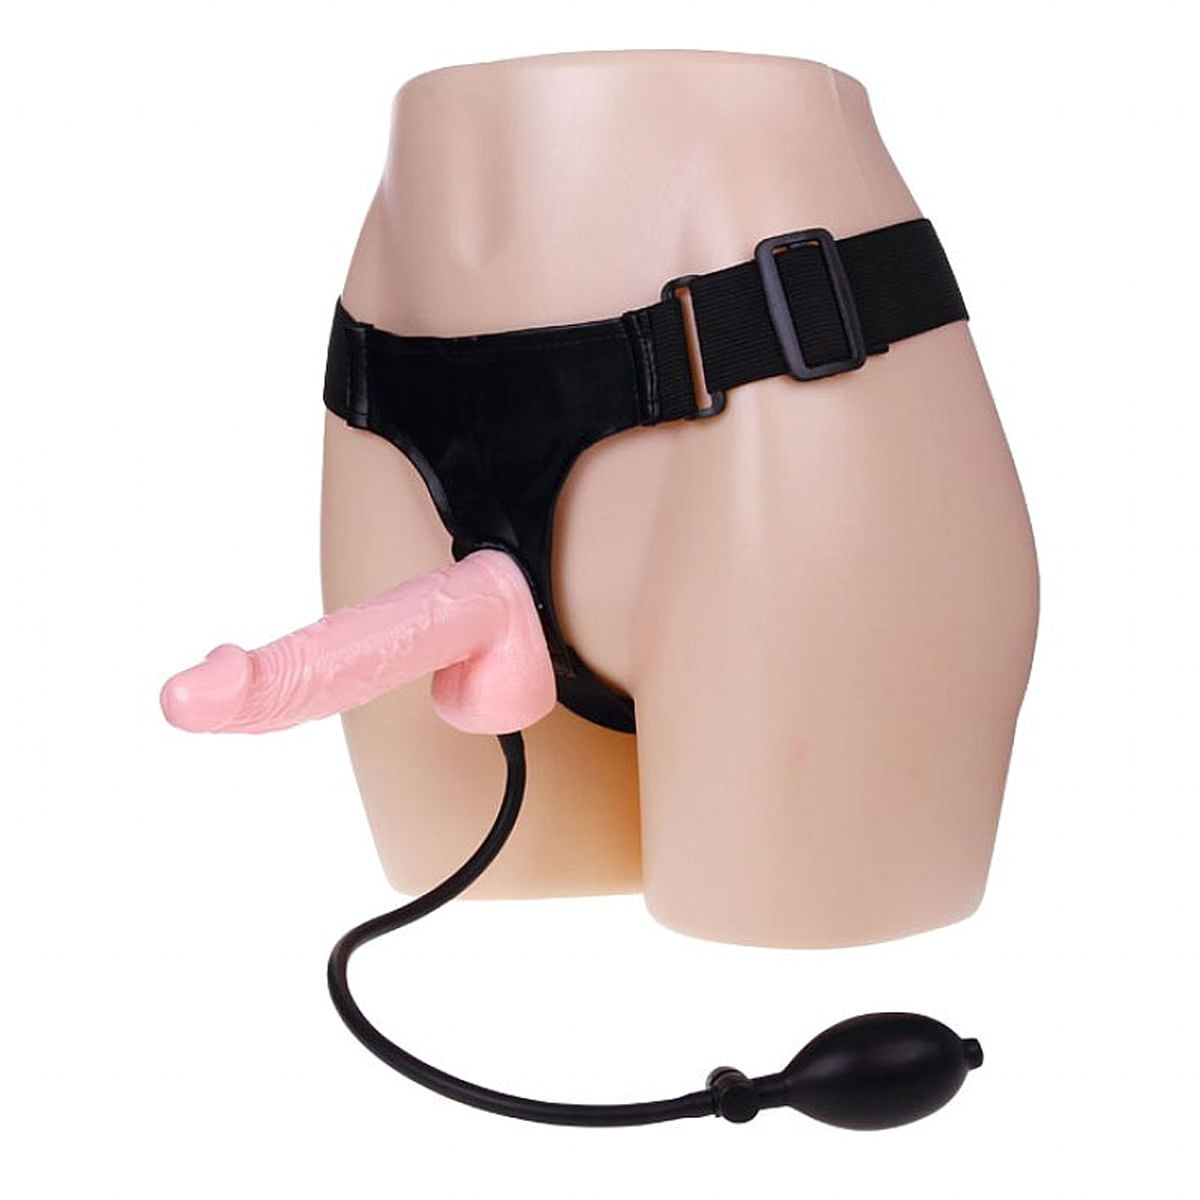 Ultra Harness Cinta Peniana com Pênis Inflável em Silicone Sexy Import